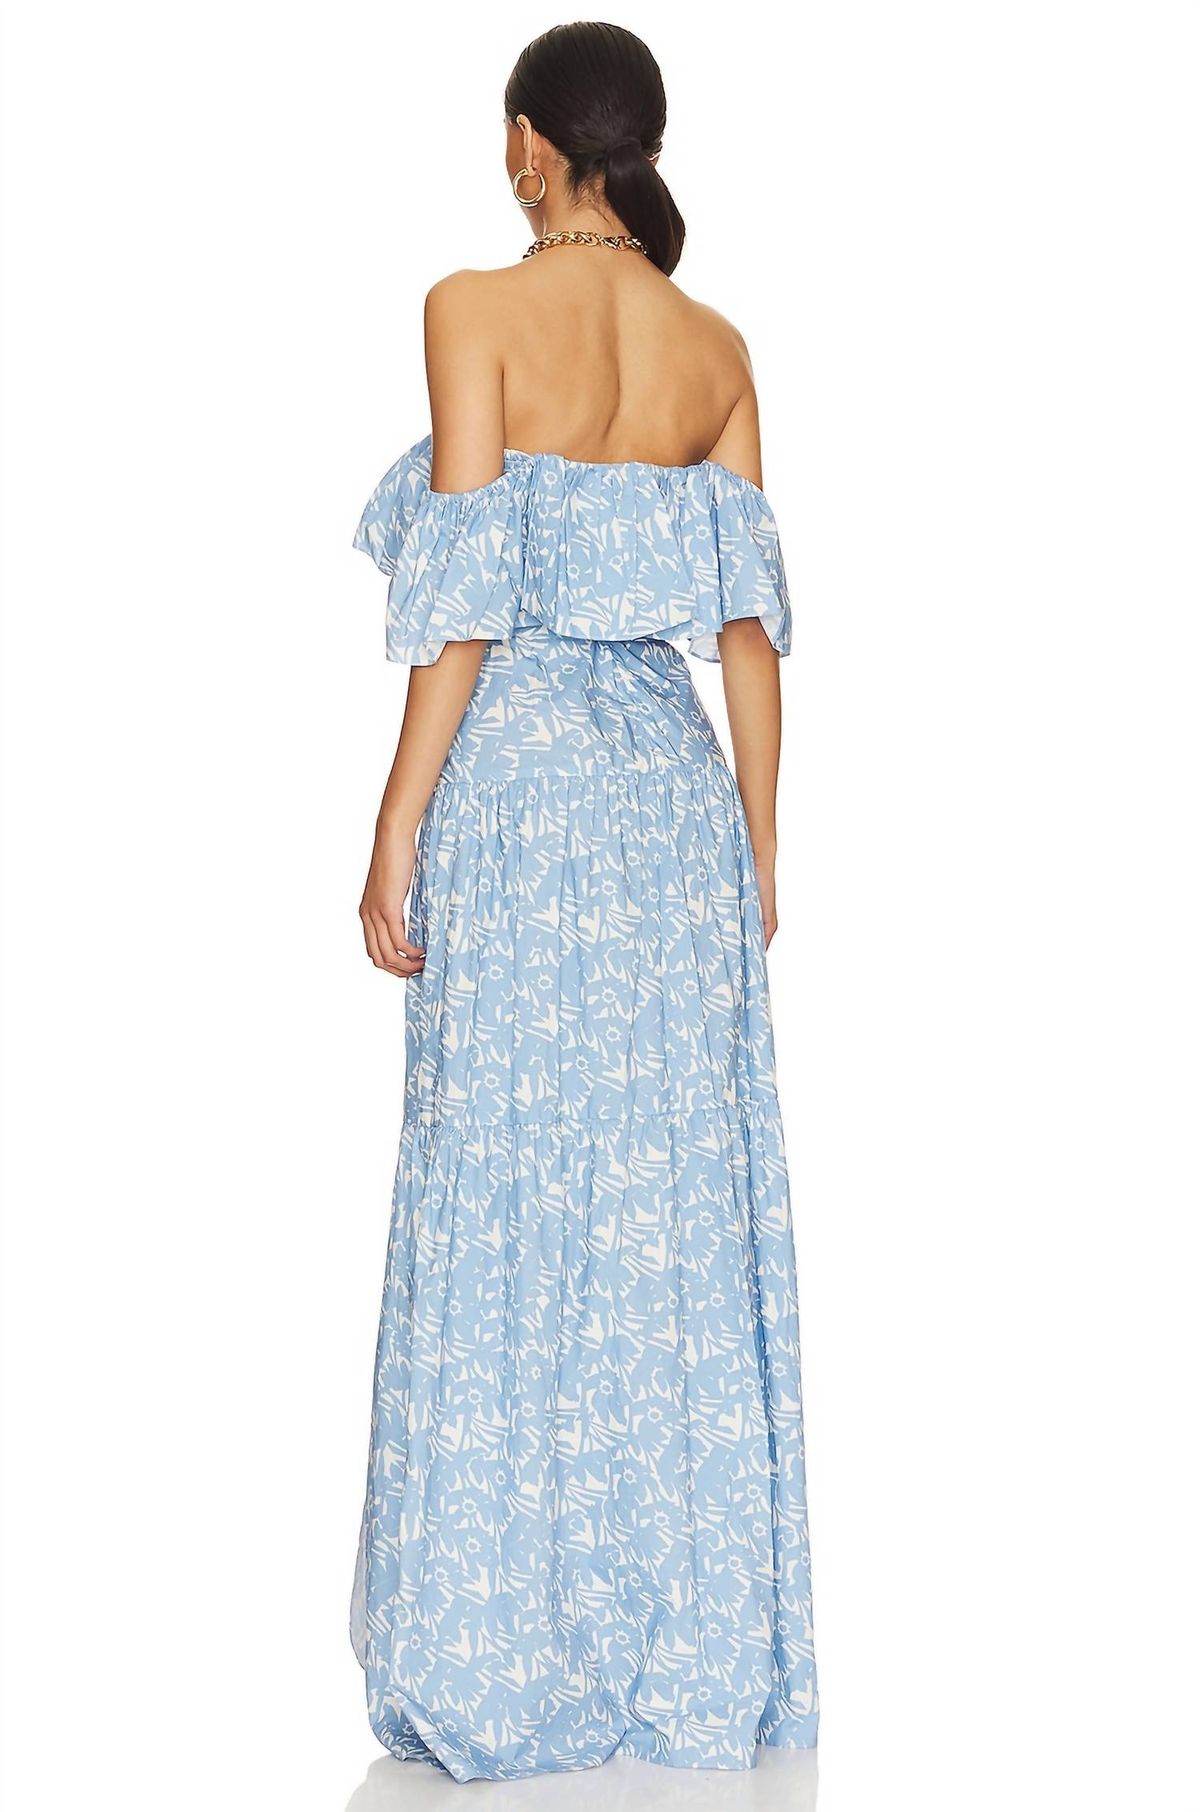 Style 1-3742347306-3855 Amanda Uprichard Size XS Off The Shoulder Floral Light Blue Side Slit Dress on Queenly